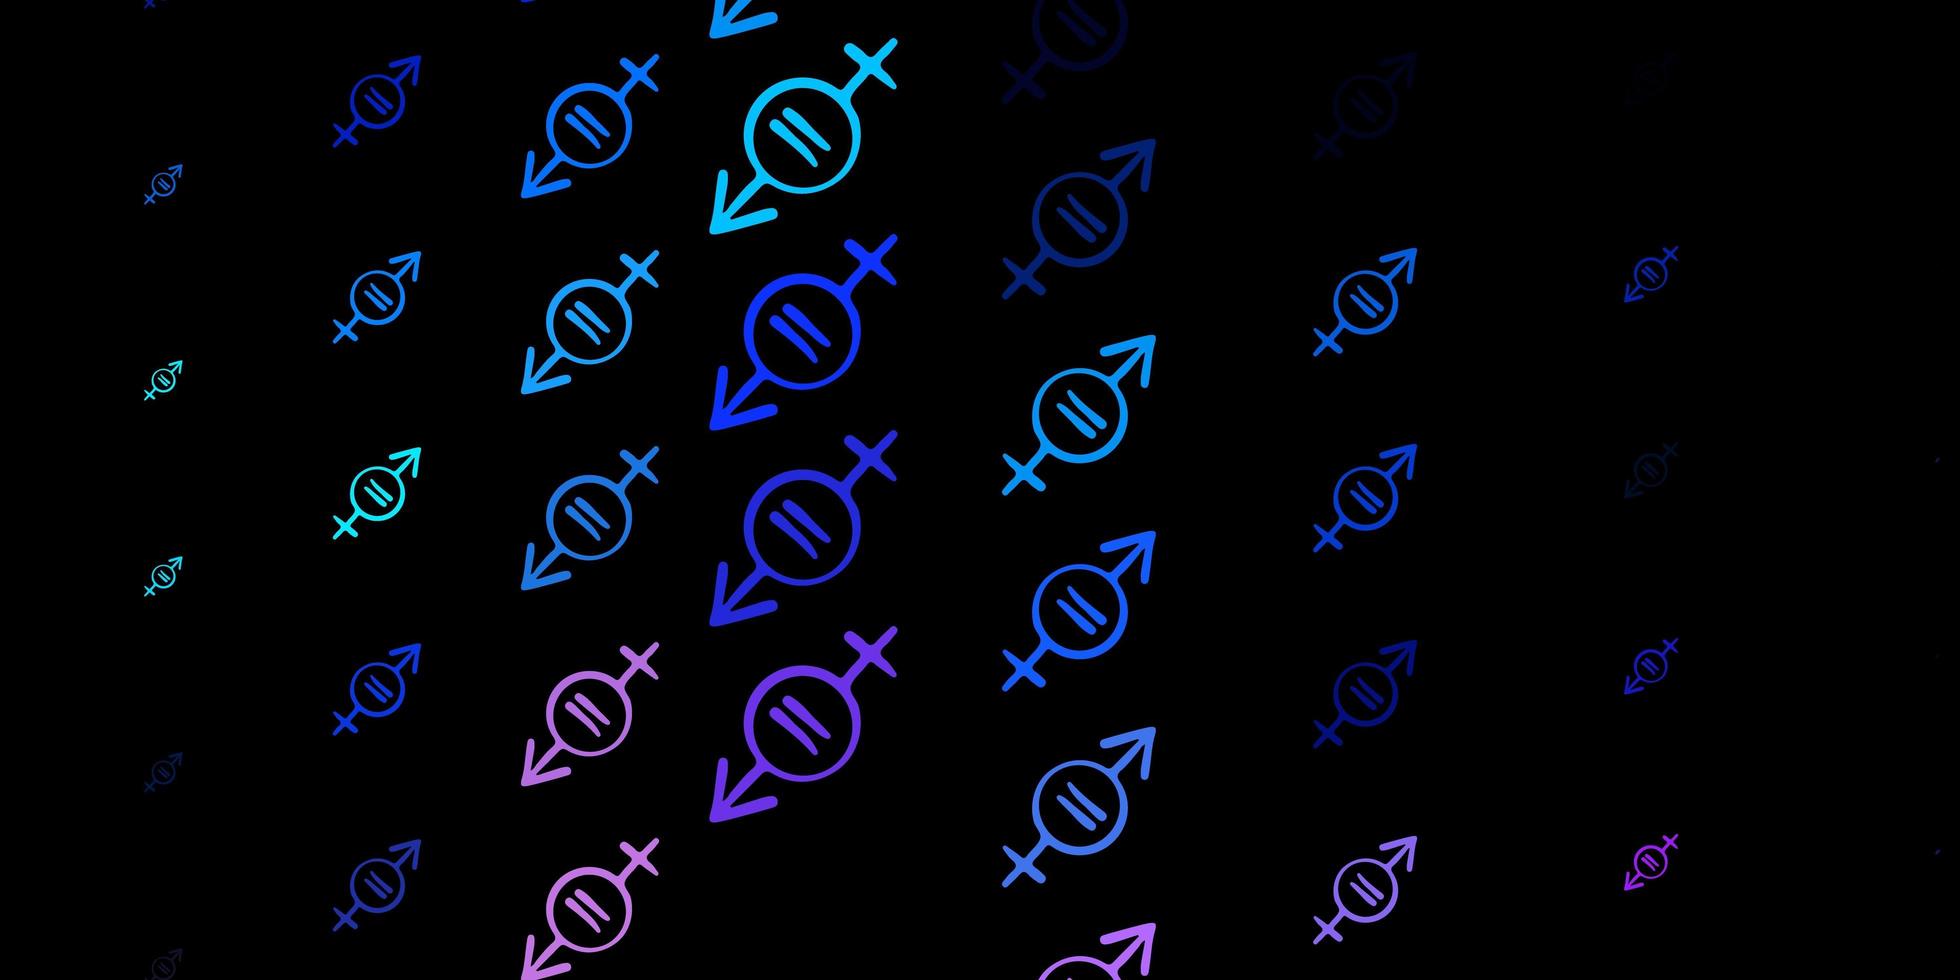 mörkrosa, blå vektormönster med feminismelement. vektor